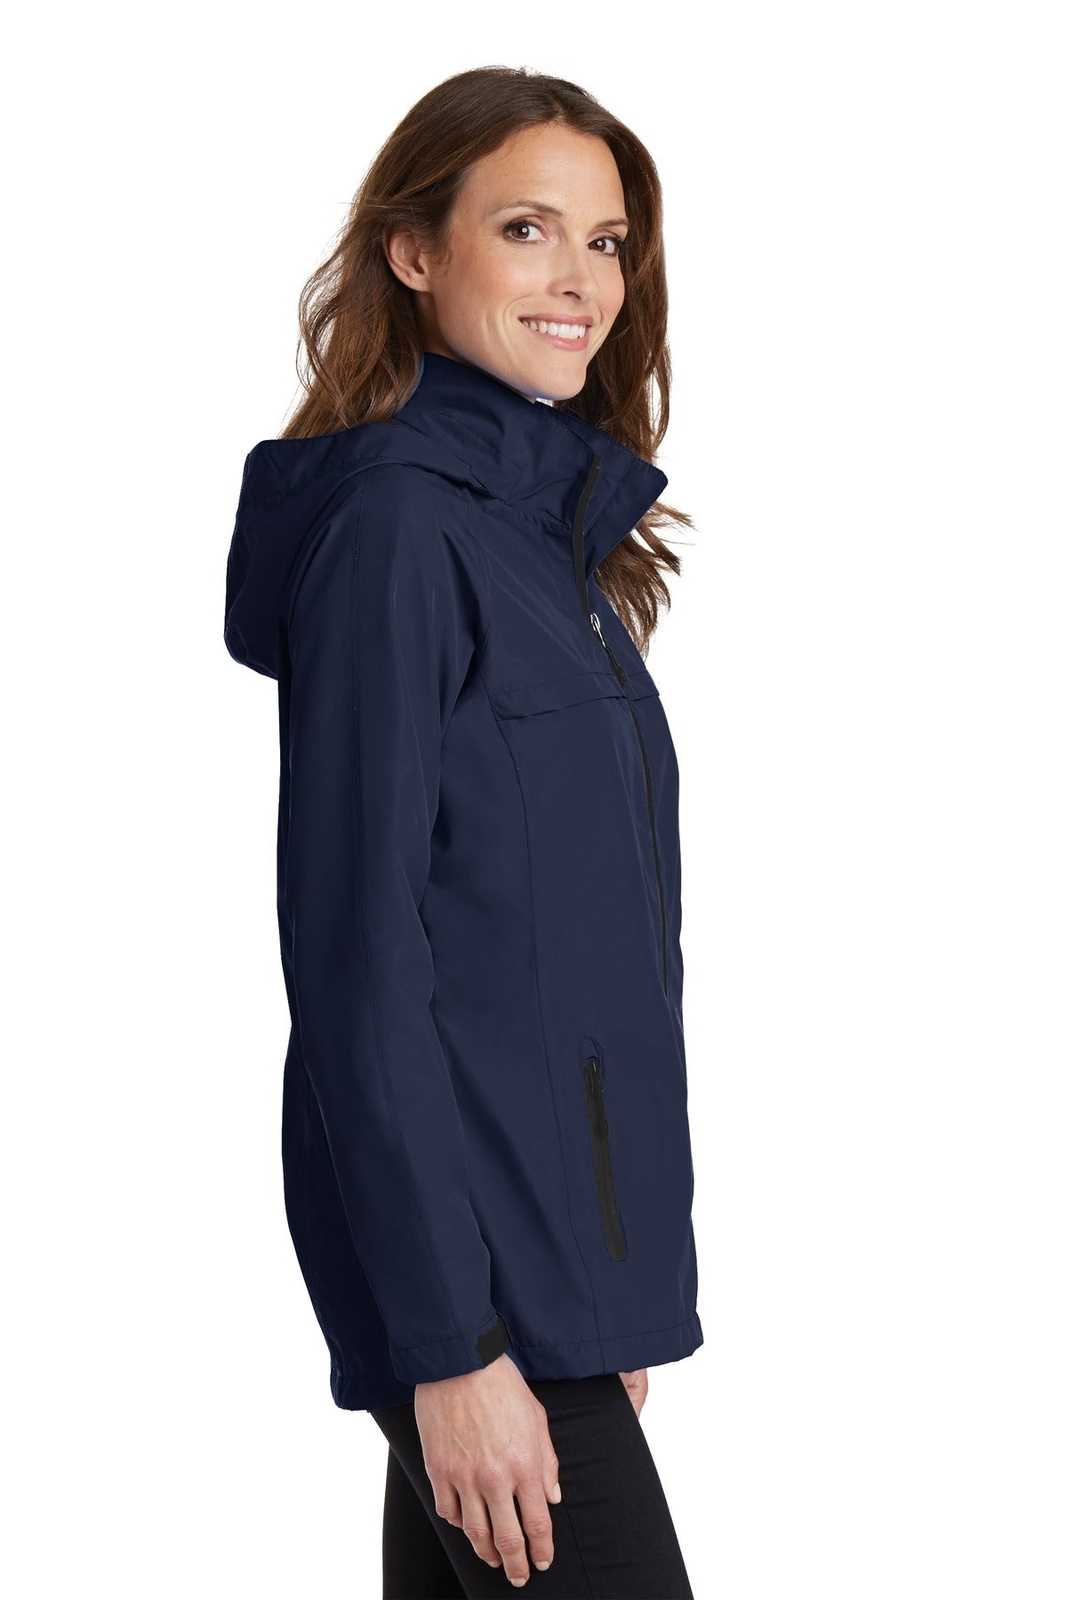 Port Authority L333 Ladies Torrent Waterproof Jacket - True Navy - HIT a Double - 3